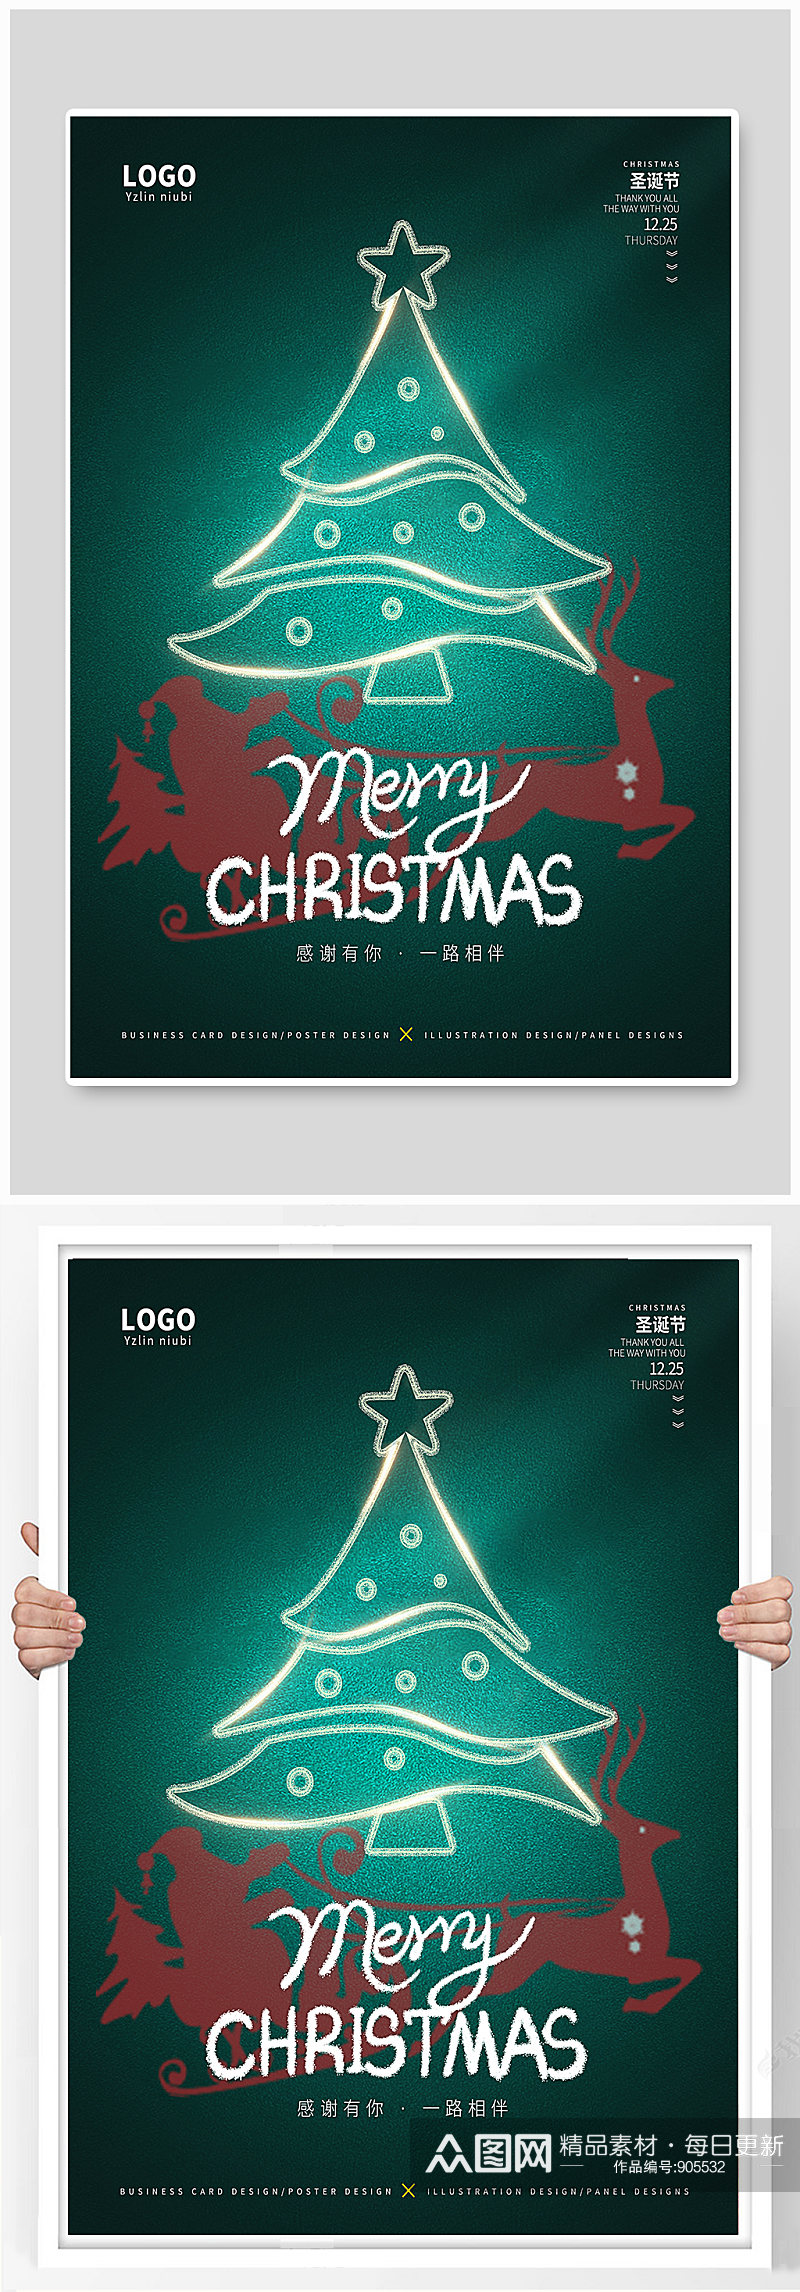 创意圣诞节简约宣传海报素材